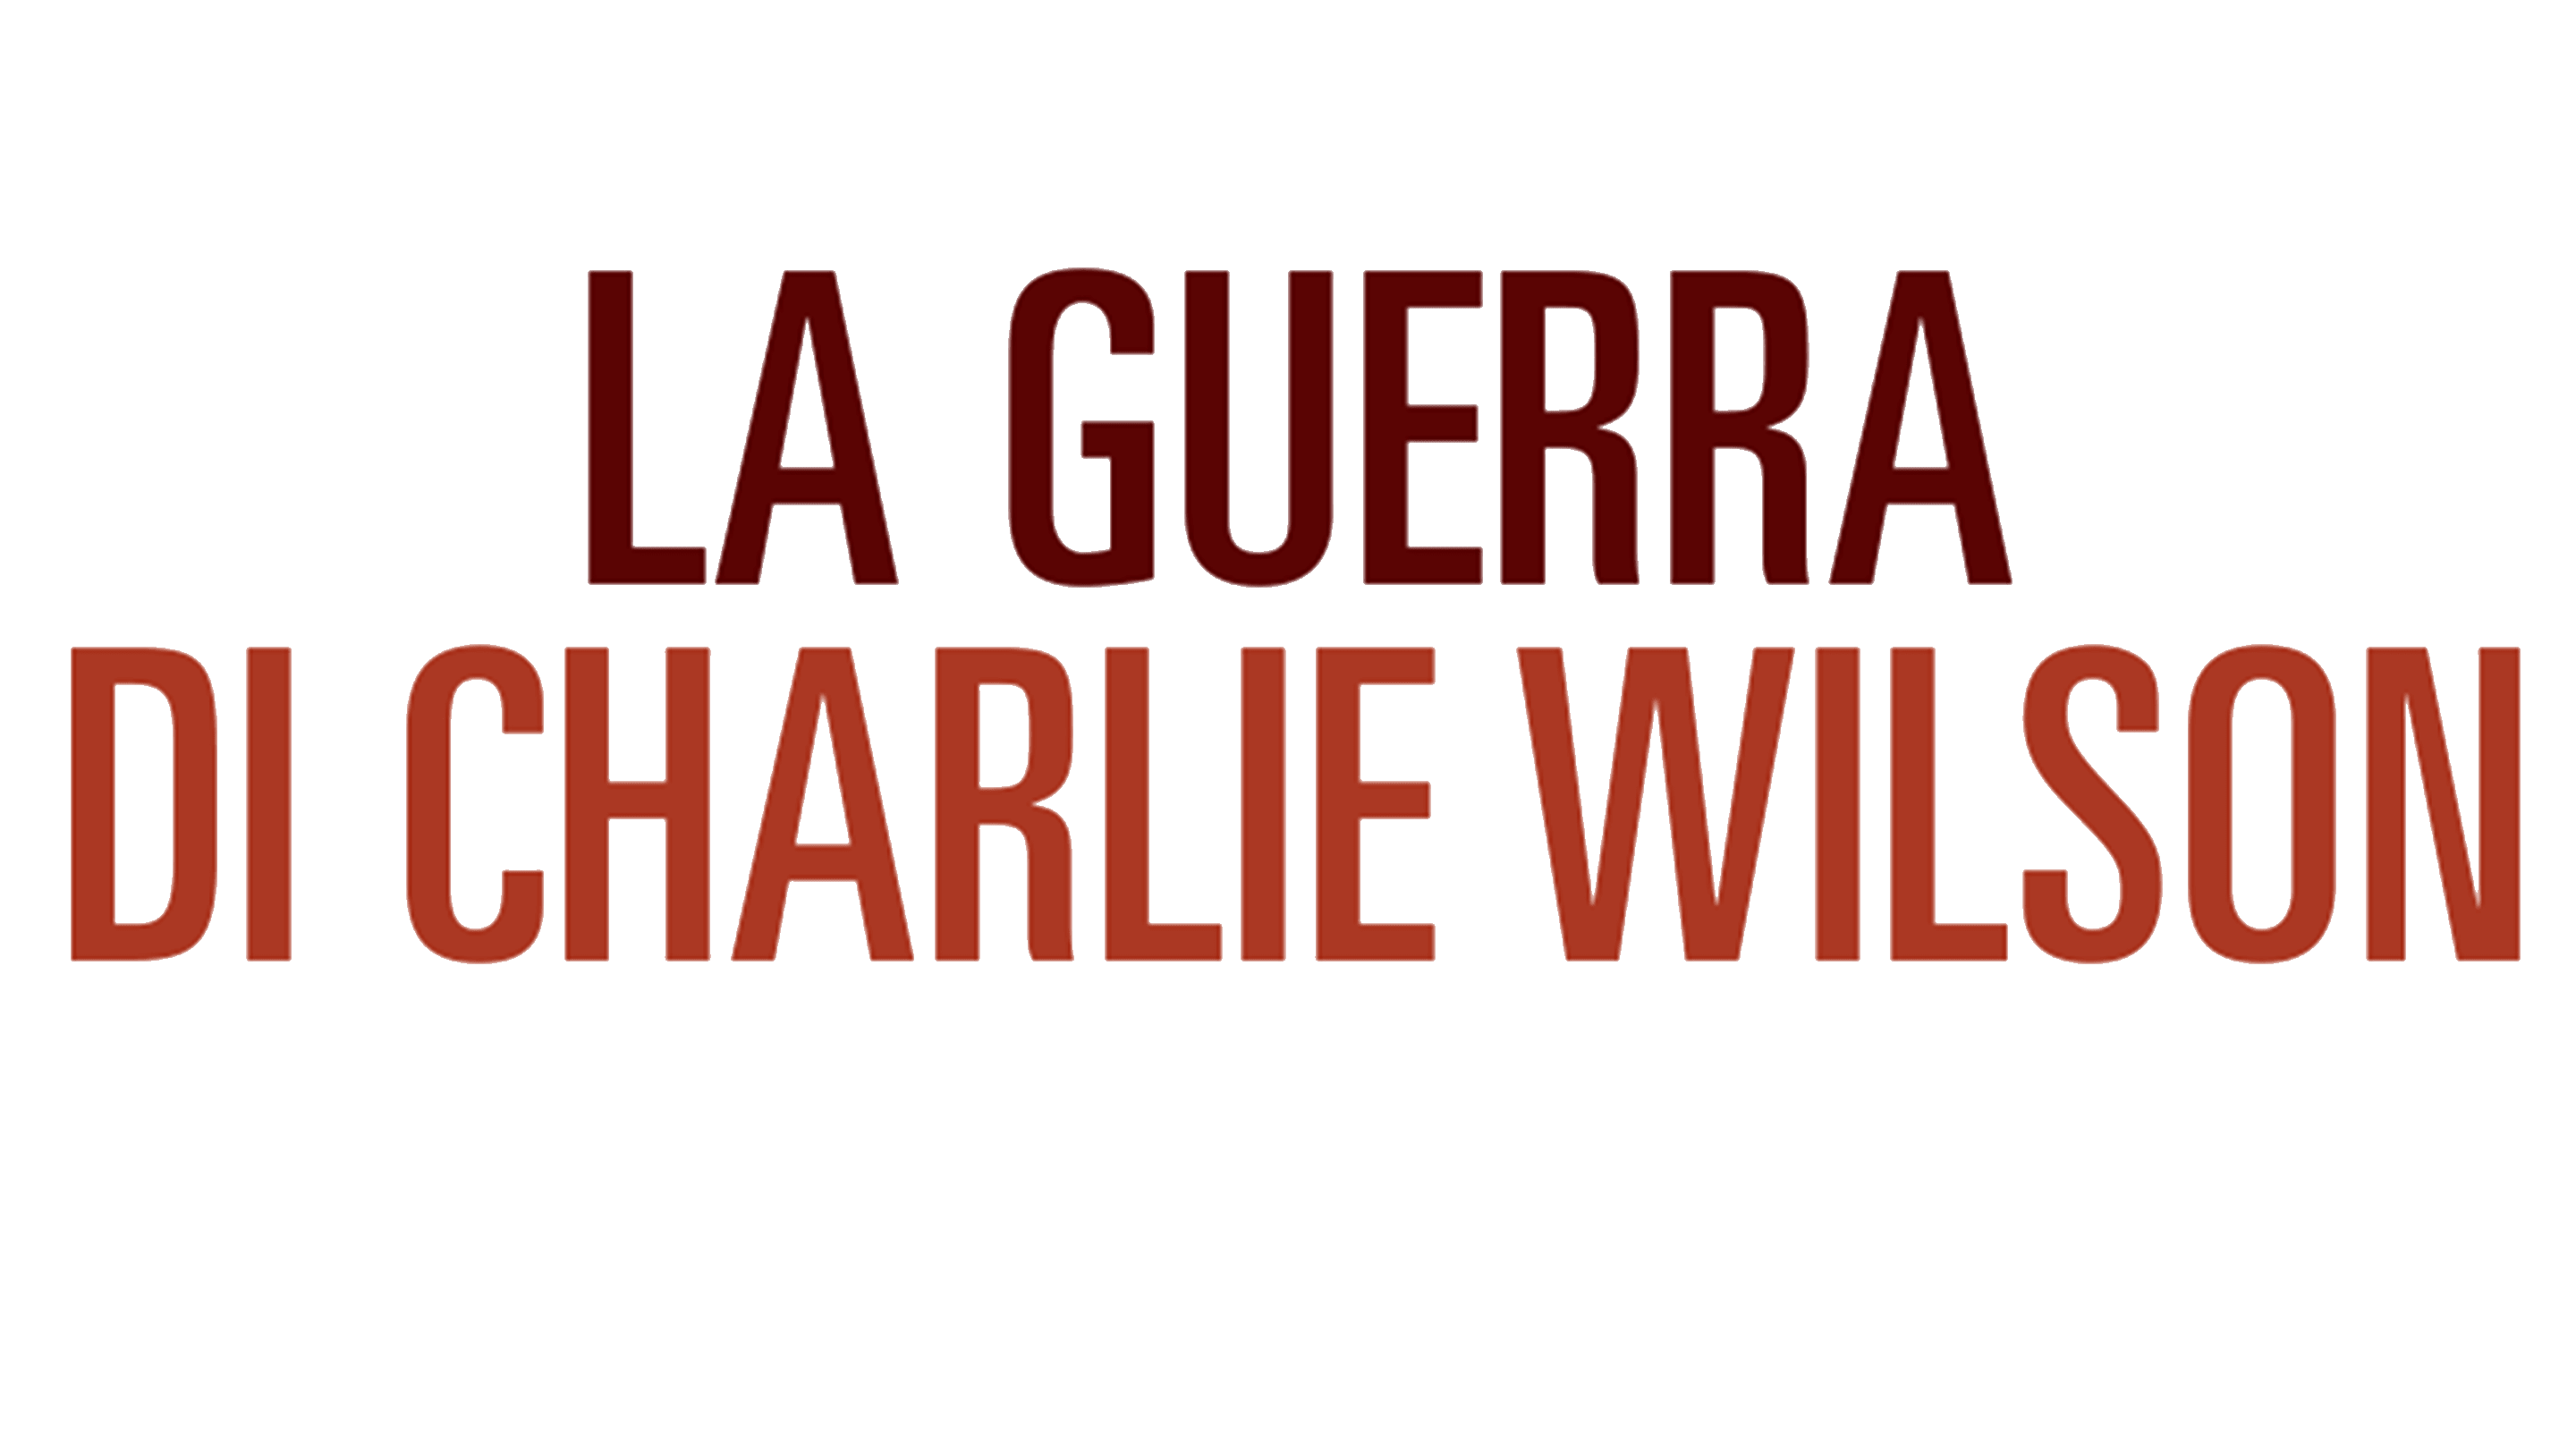 La guerra di Charlie Wilson